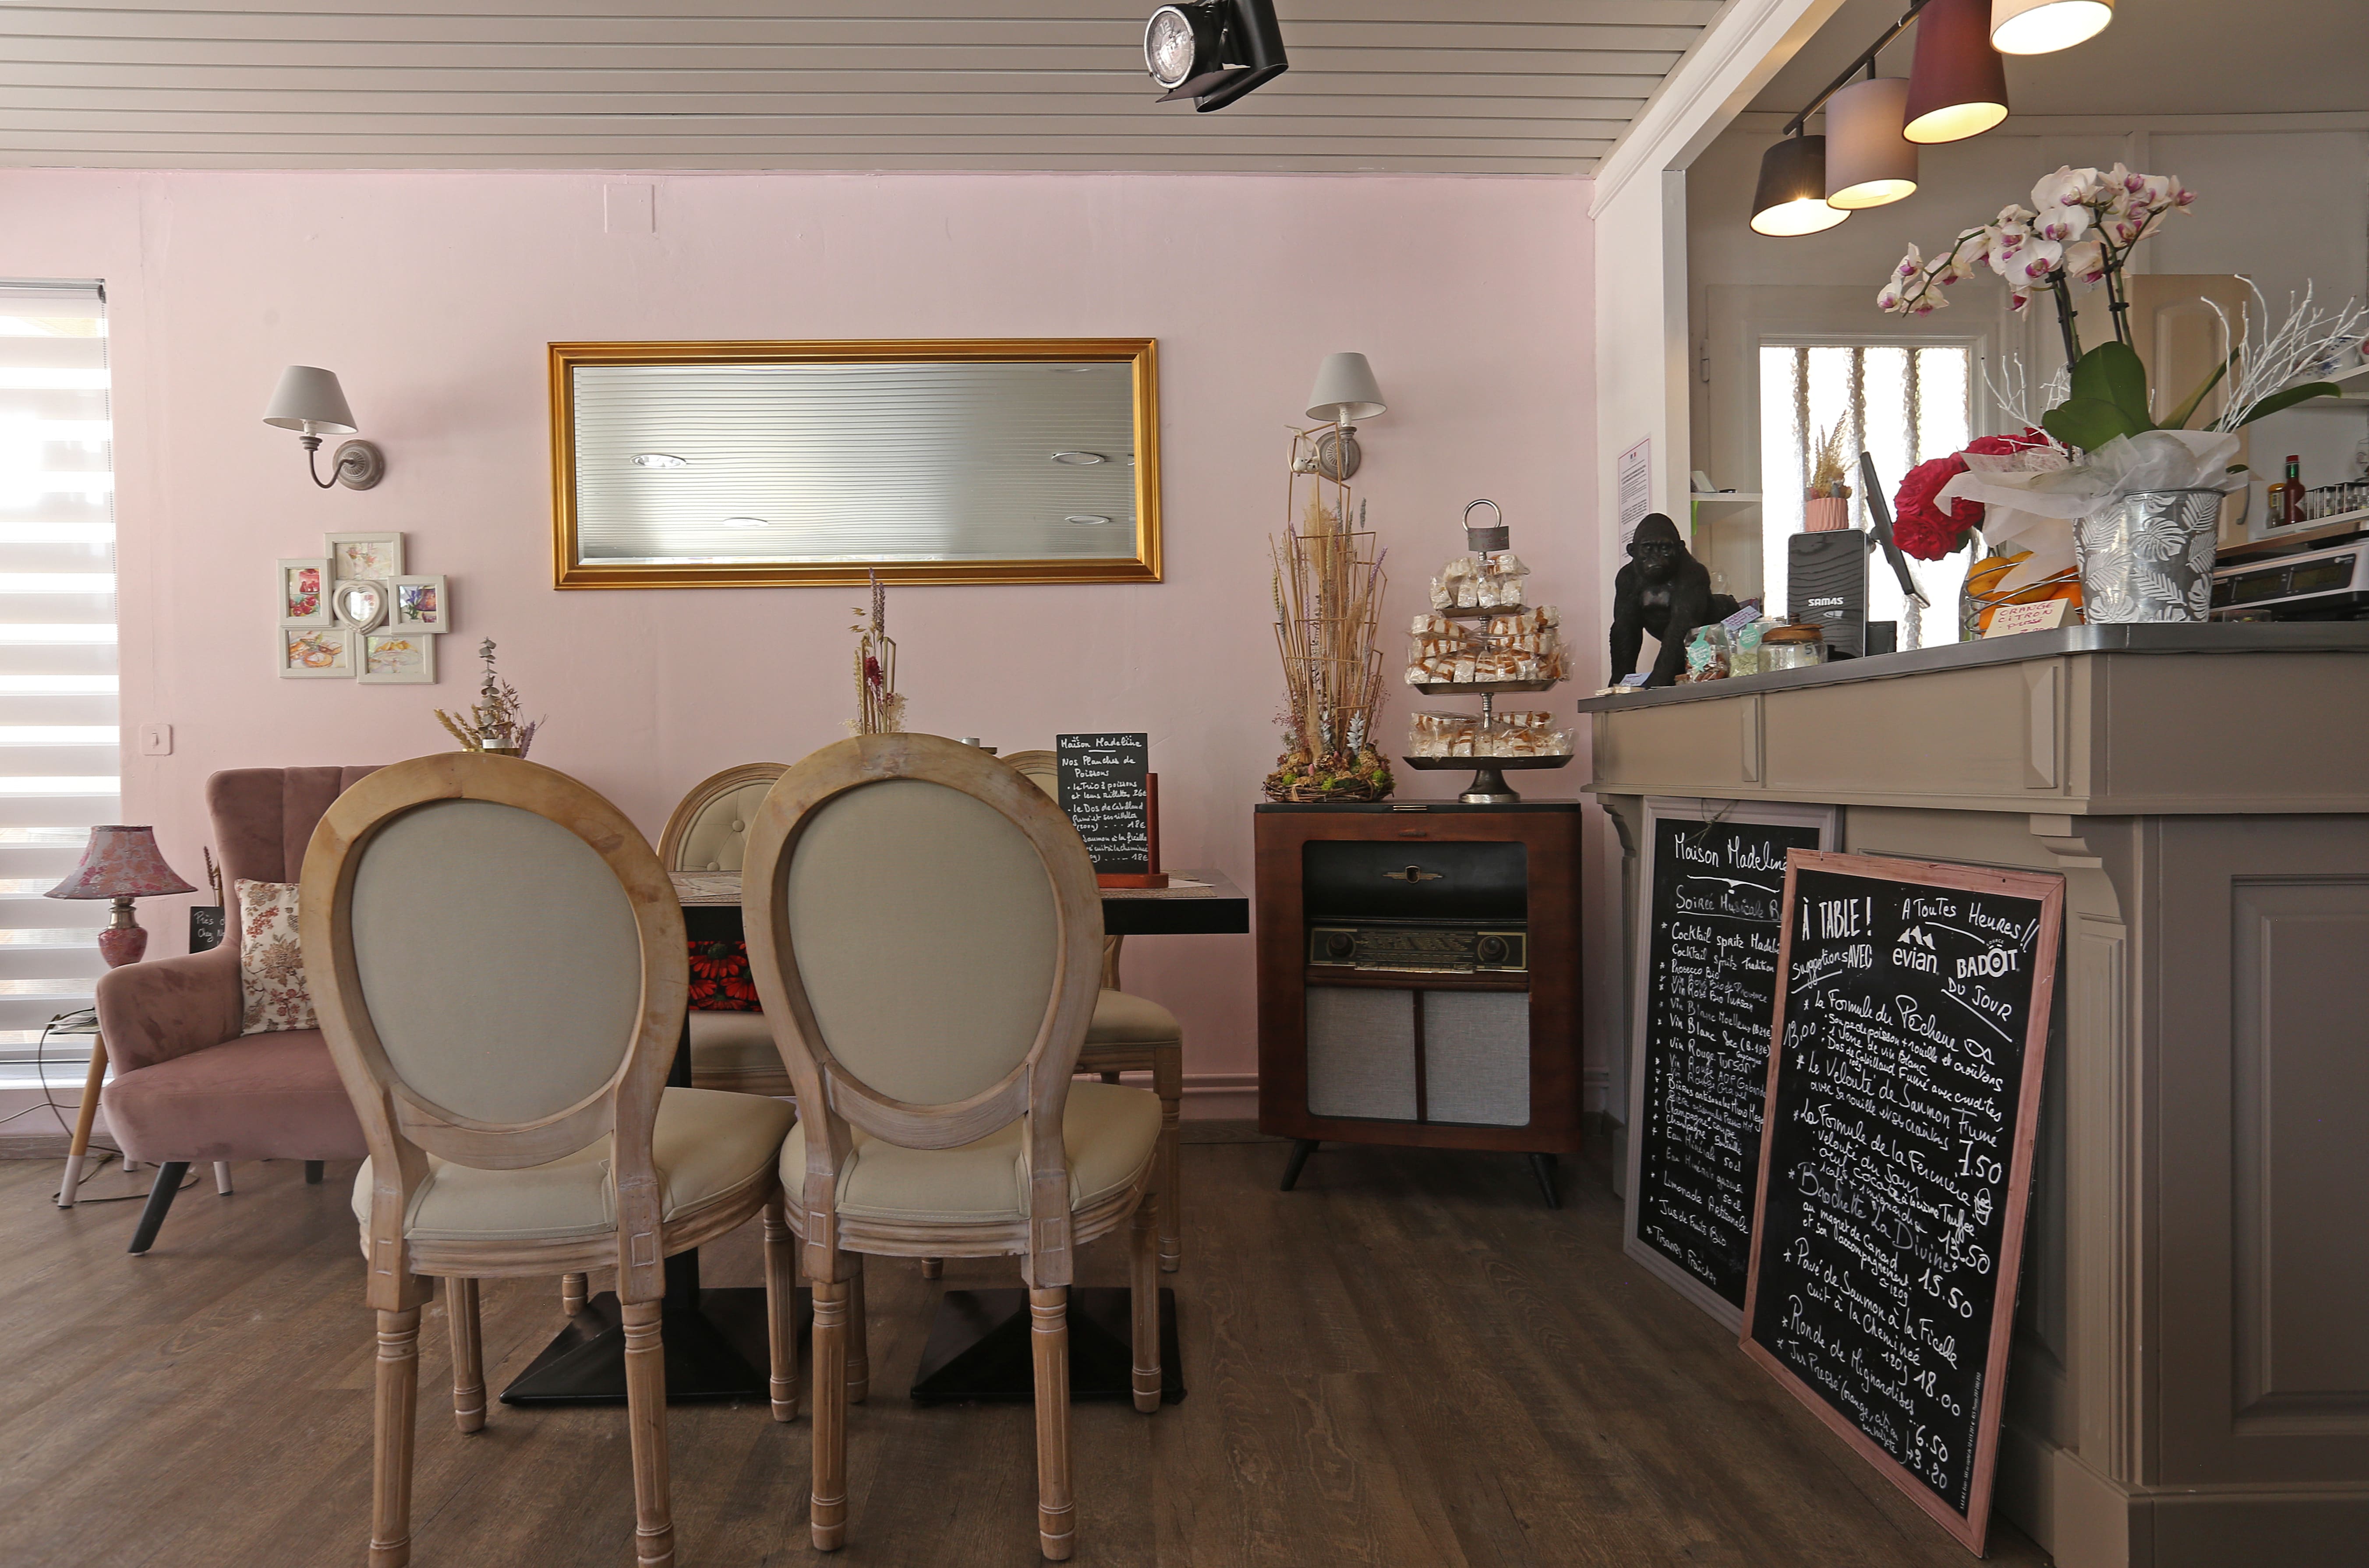 A Eugénie-les-Bains, la Maison Madeline ouvre ses portes du mardi au dimanche. Envie d'une pause petite conviviale et gourmande ?